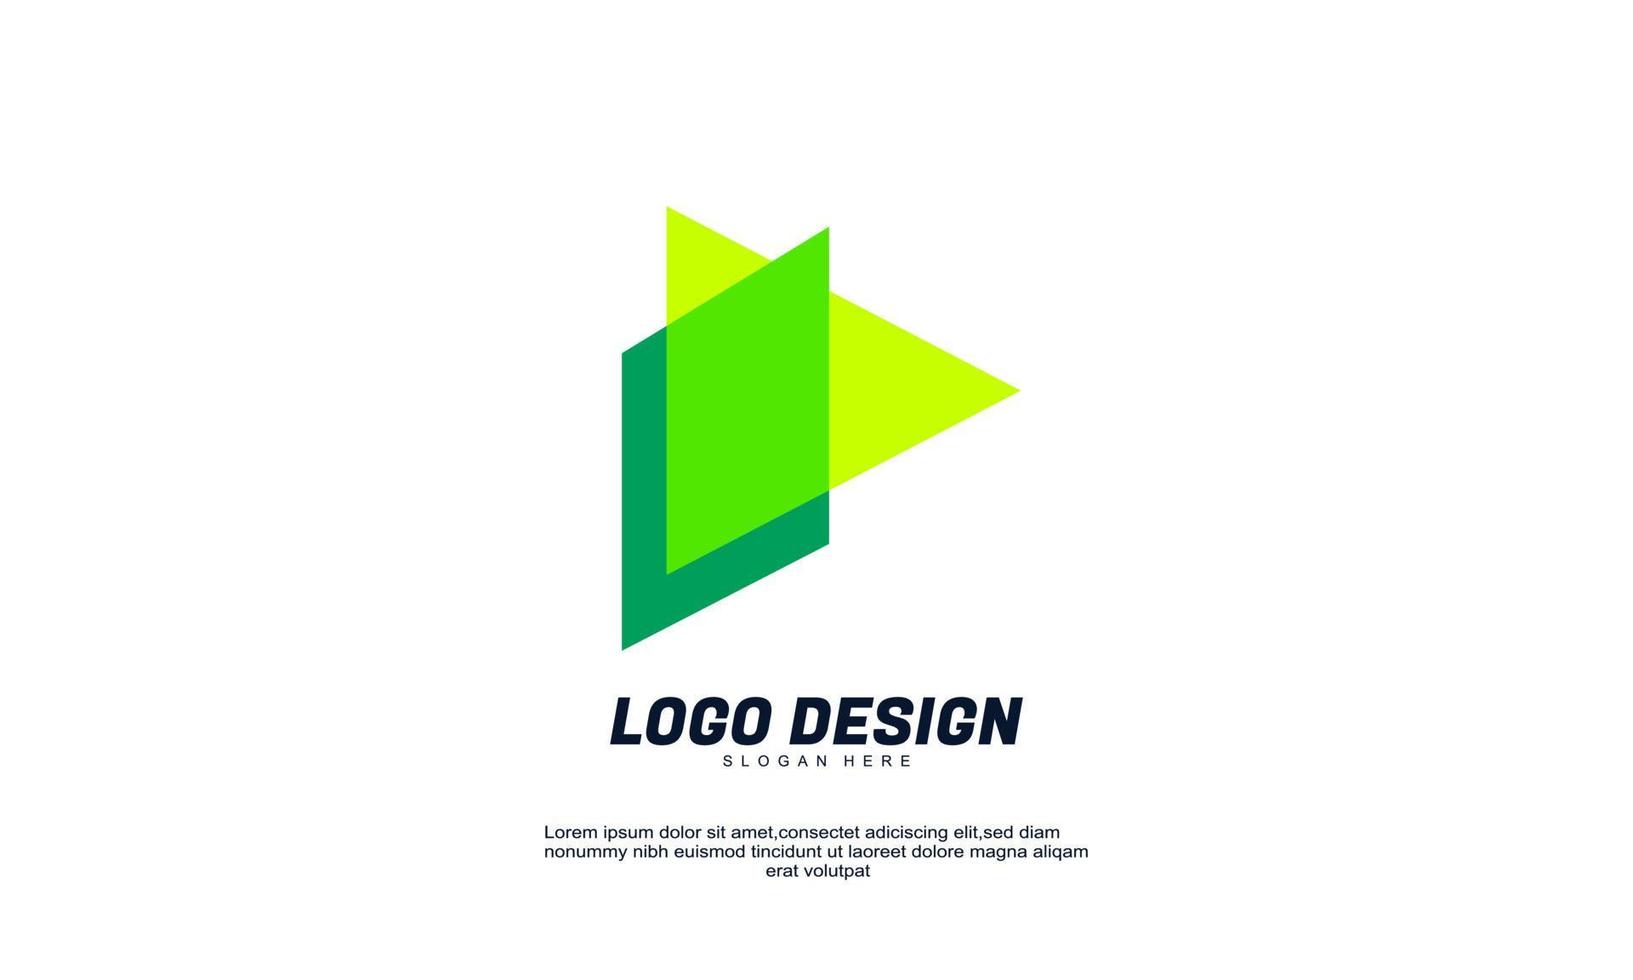 Stock kreatives modernes Business-Icon-Design-Formelement mit Firmengebäude-Vorlage am besten für Markenidentität vektor